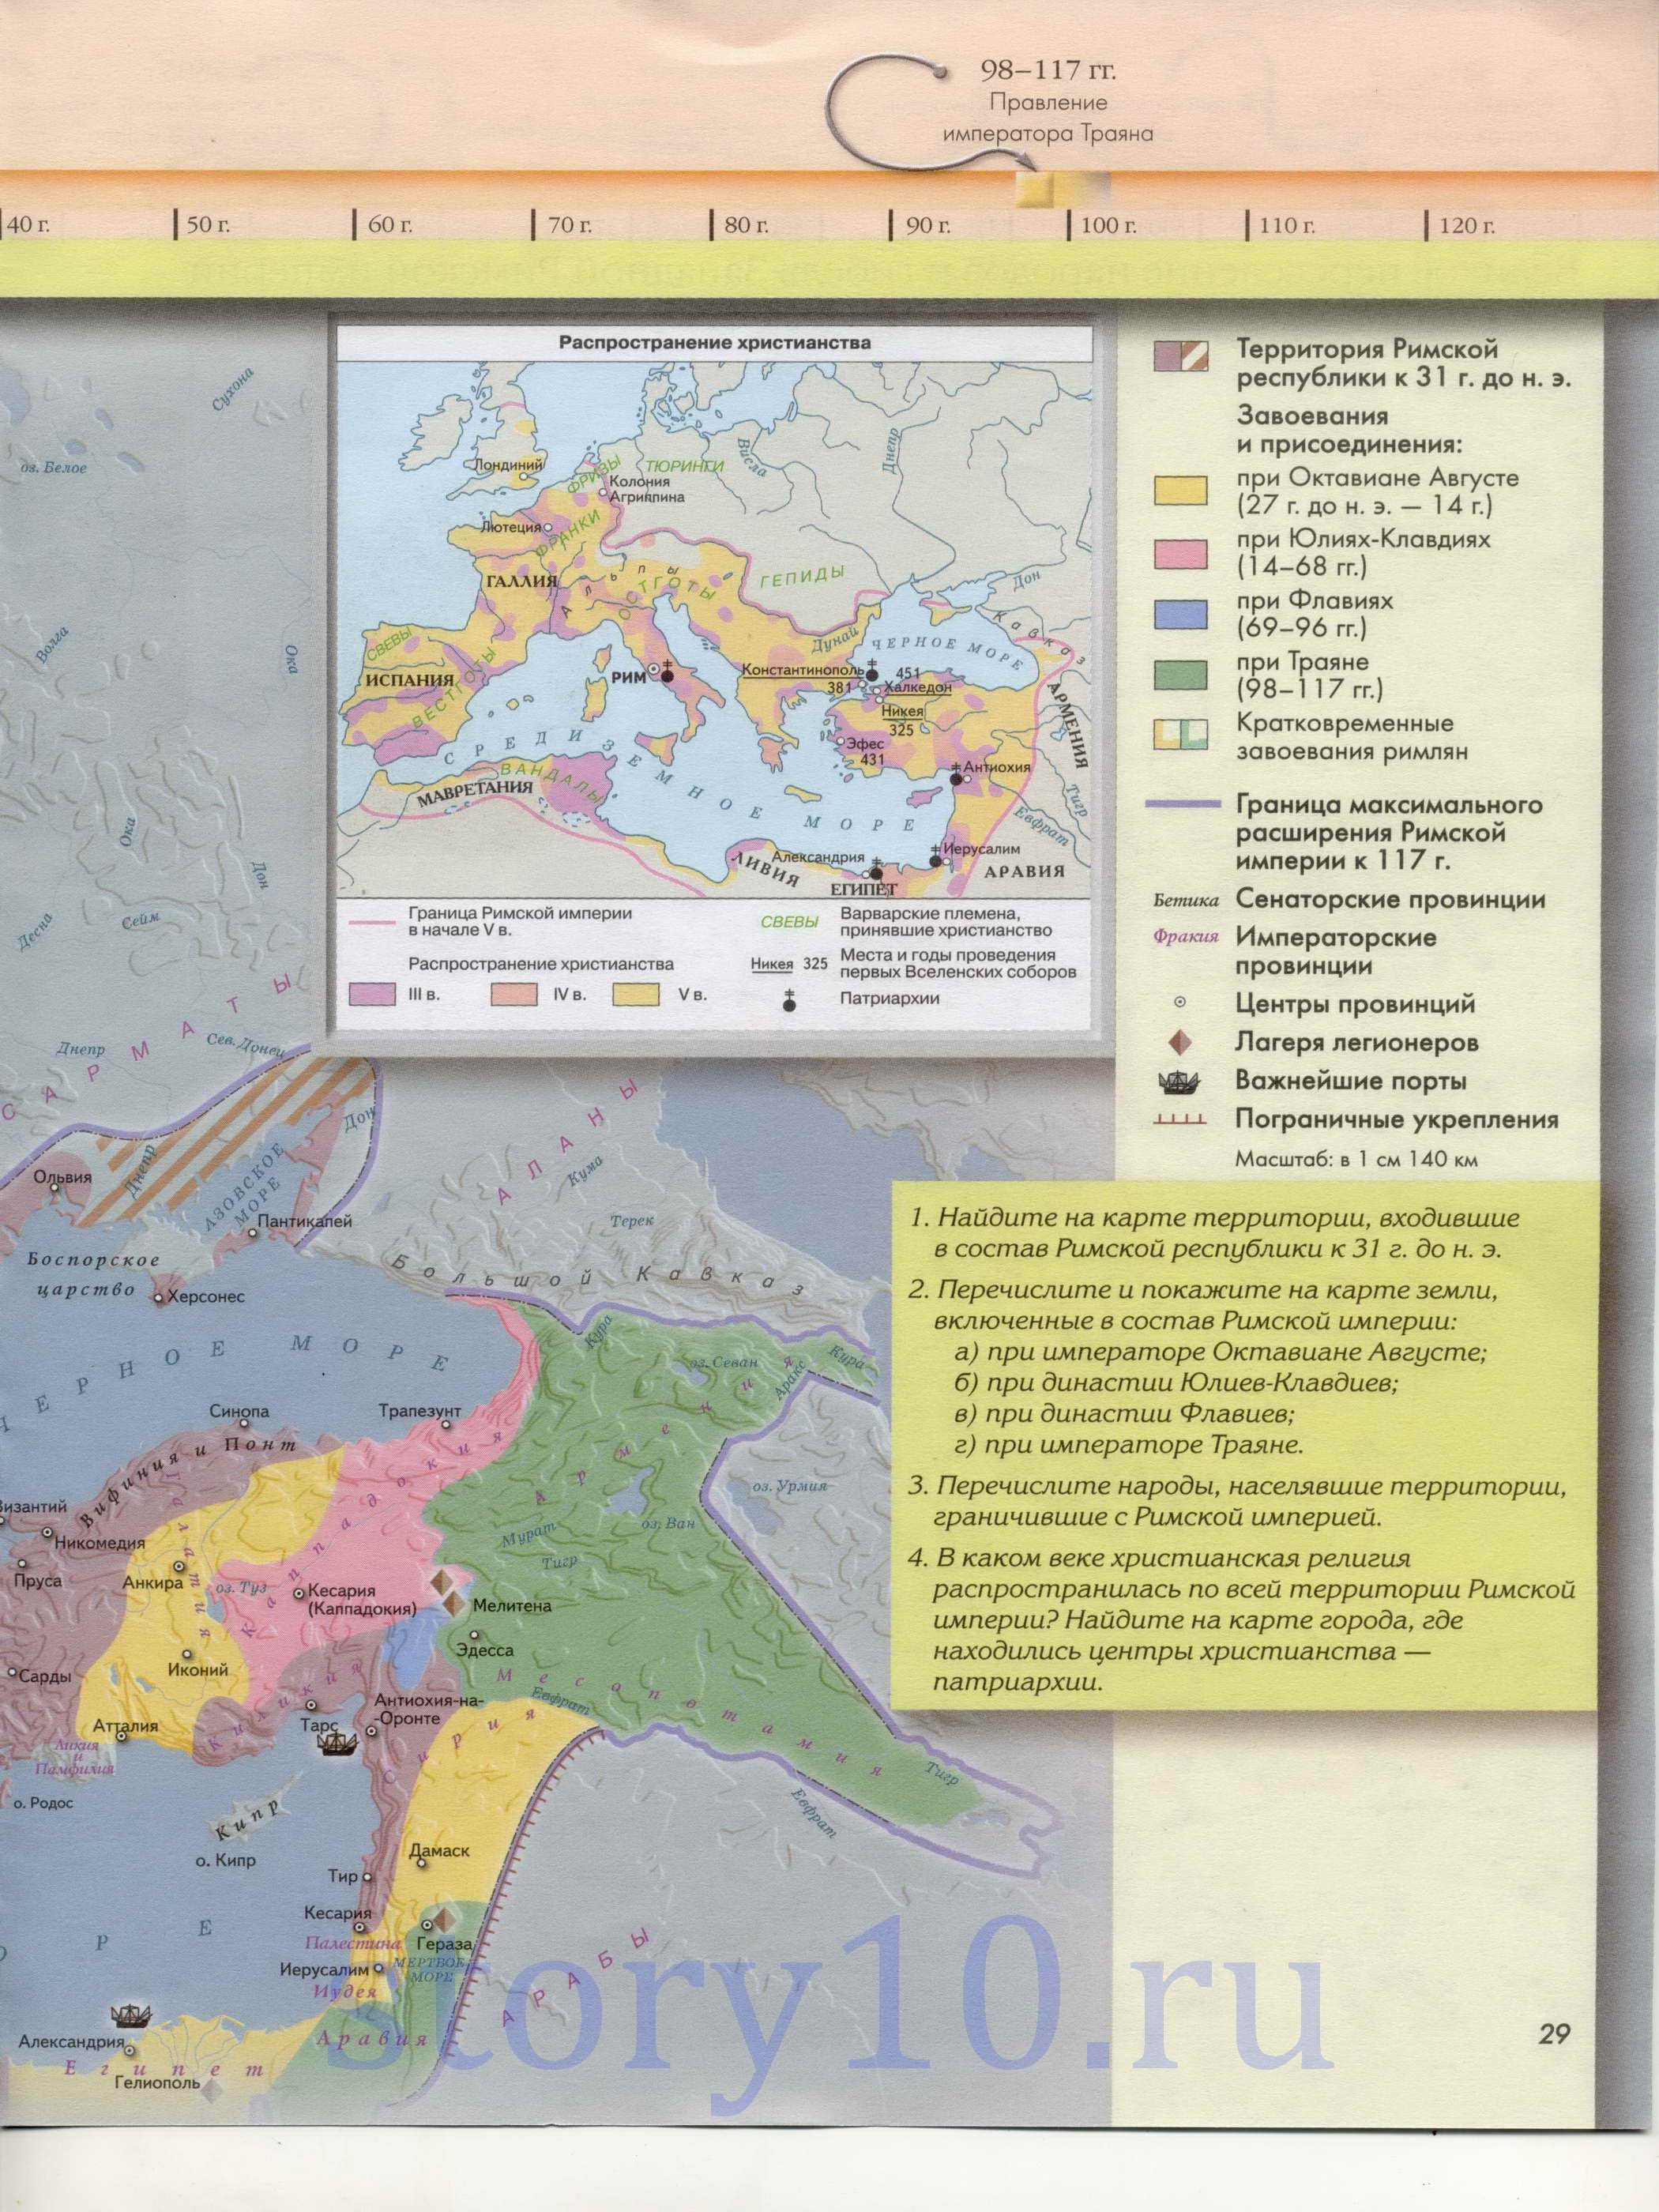 Завоевания и присоединения Римской империи. Карта Римской империи к 117 году, B0 - 